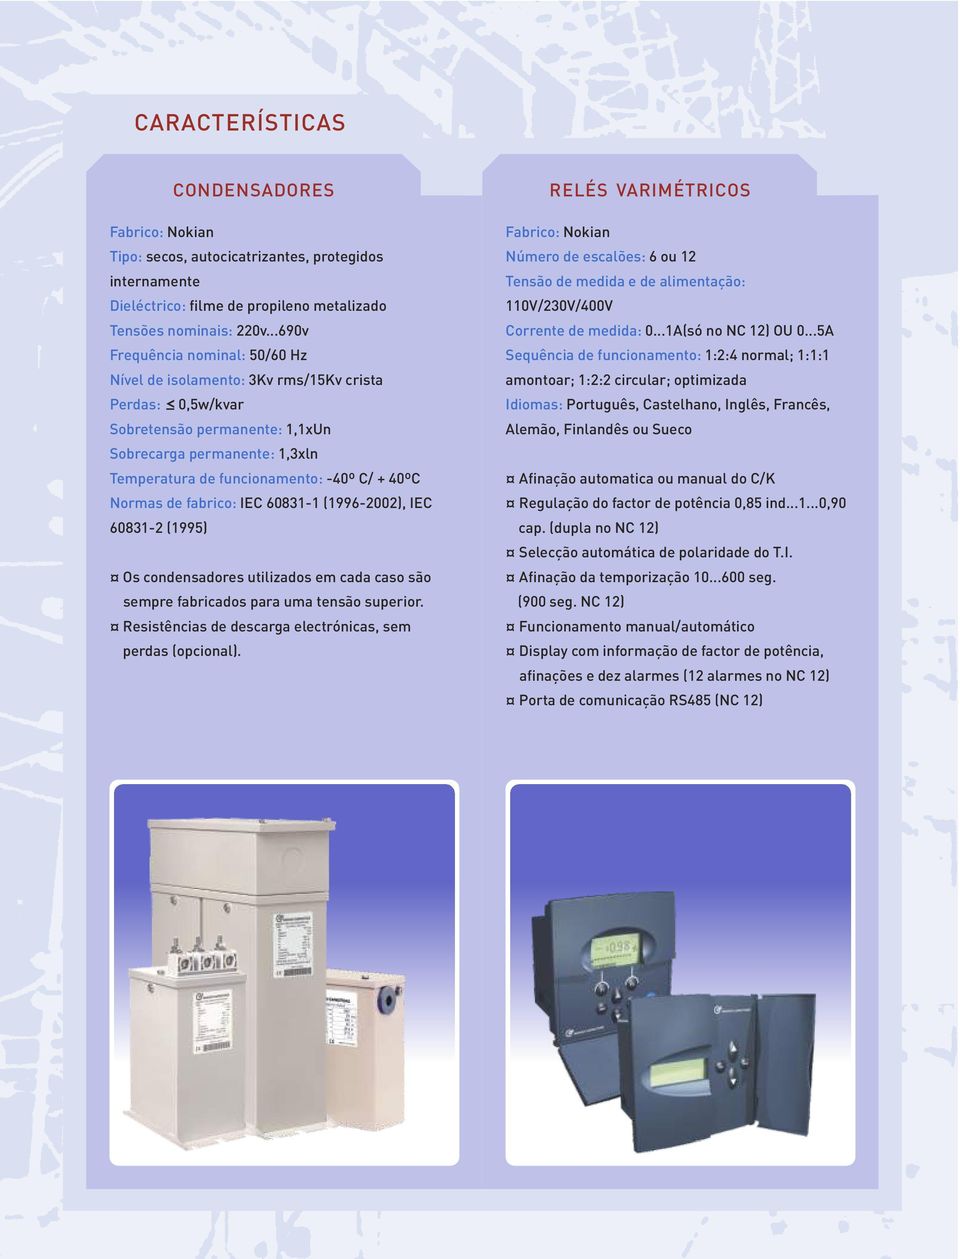 Normas de fabrico: IEC 081-1 (199-2), IEC 081-2 (1995) Os condensadores utilizados em cada caso são sempre fabricados para uma tensão superior.